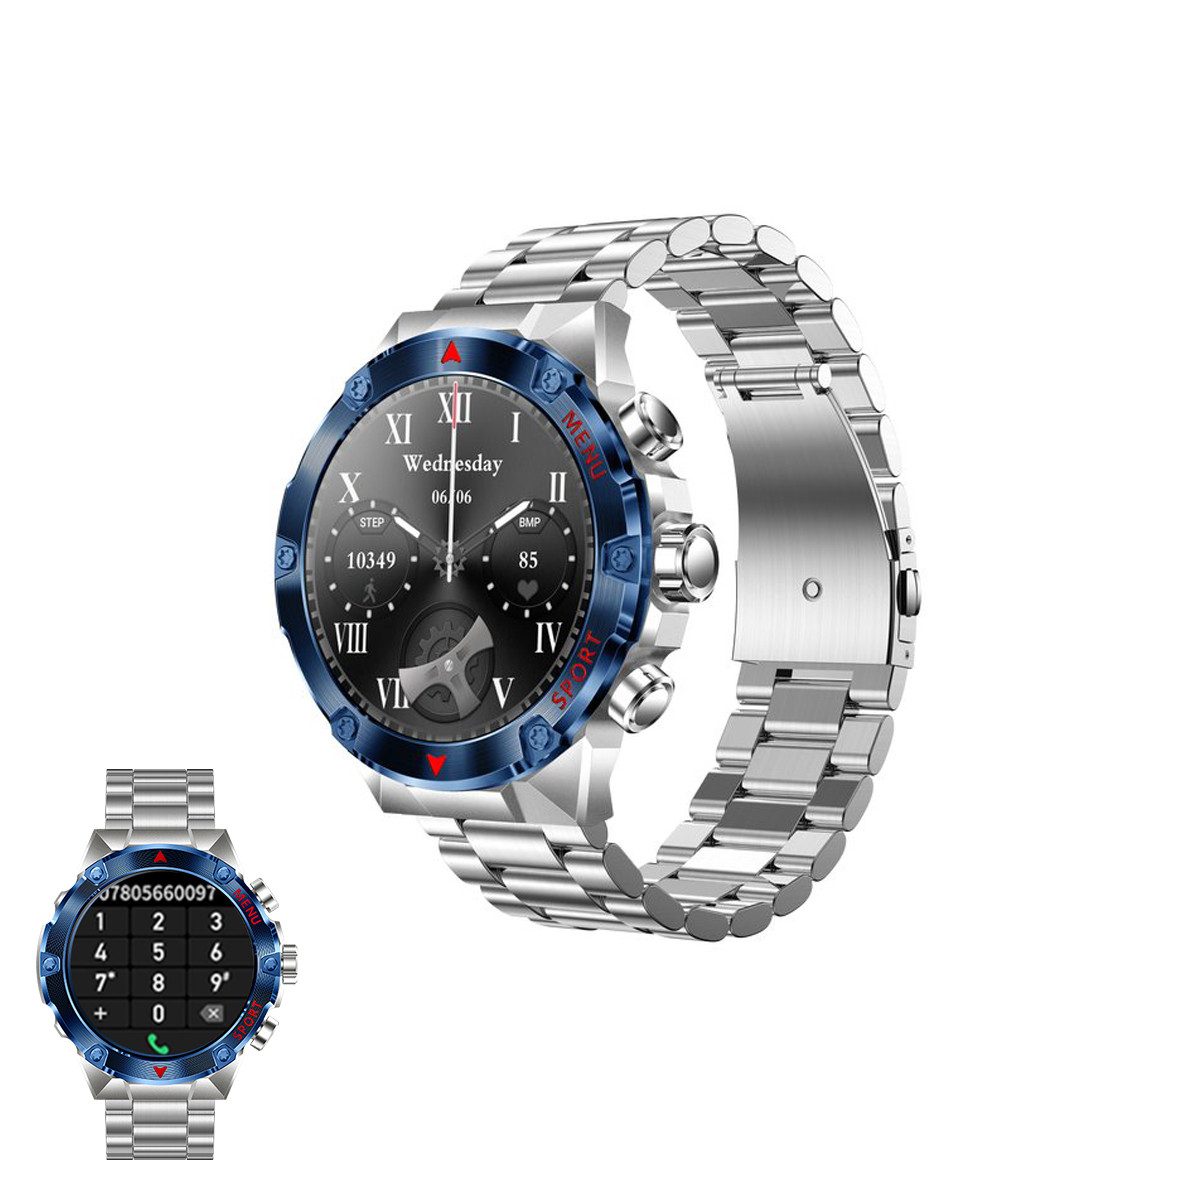 HYIEAR Smartwatch für Damen und Herren, 1,43 Zoll ultraklare Auflösung Smartwatch (Android/iOS)